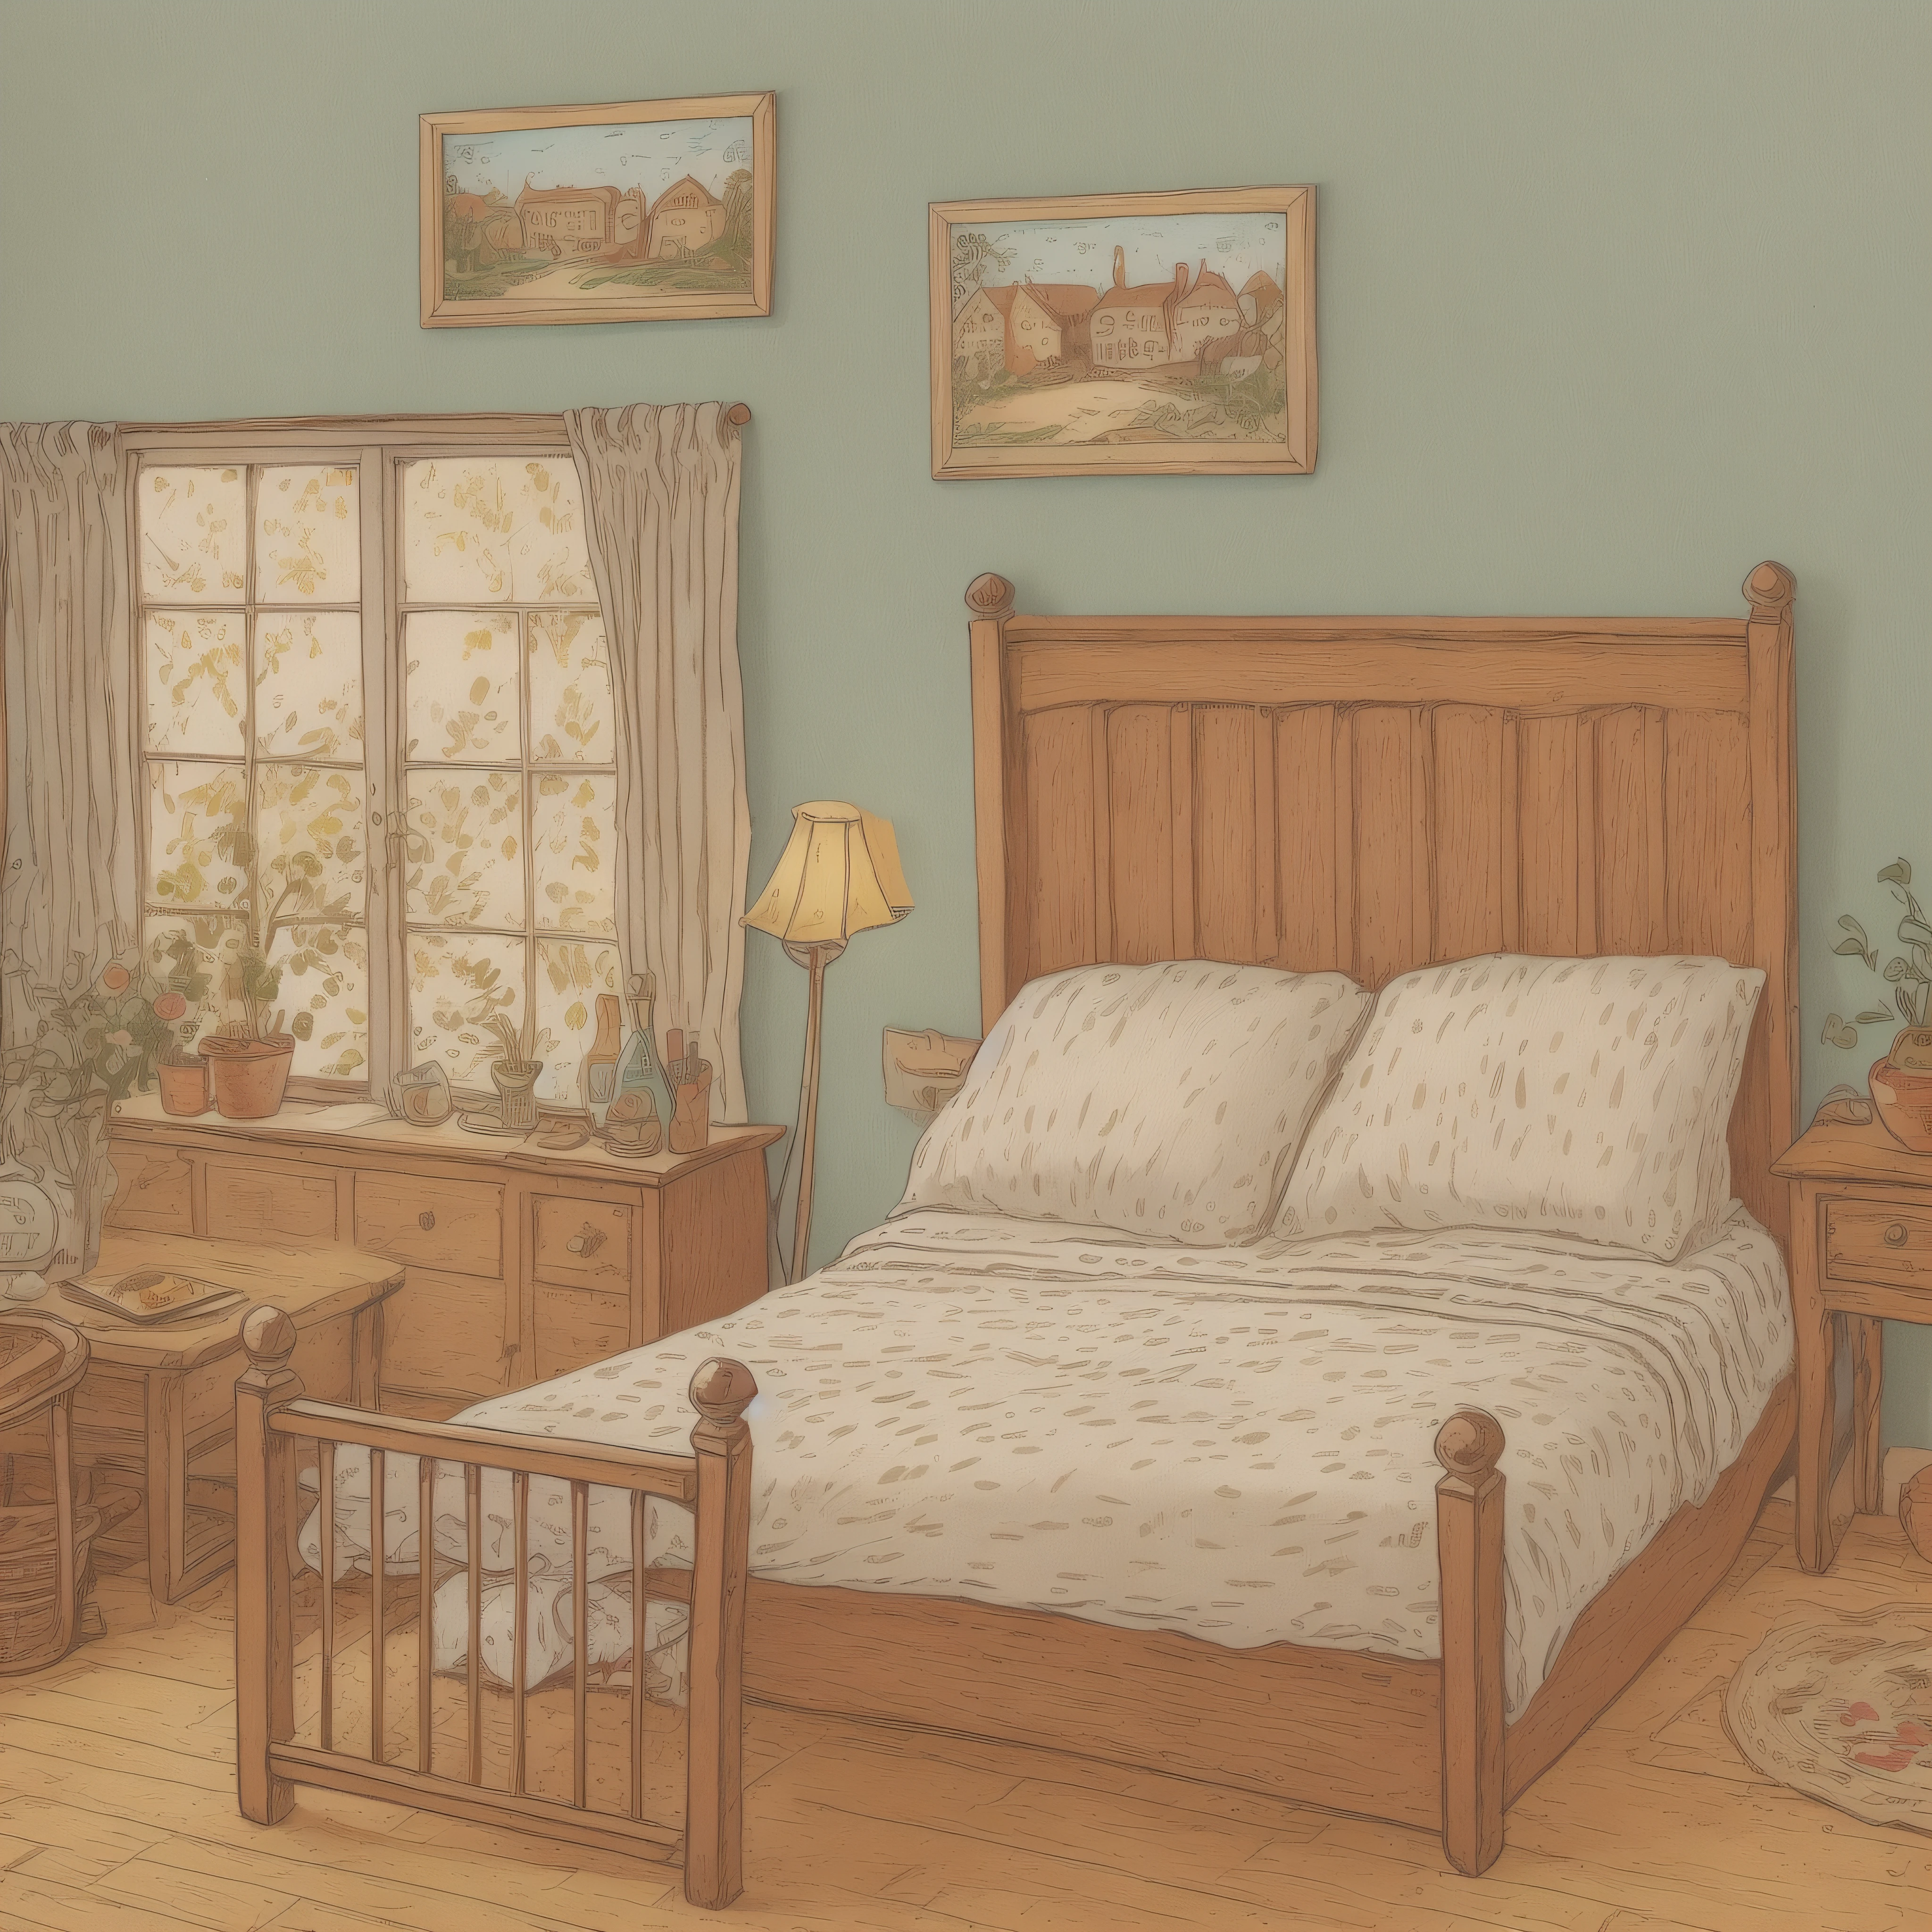 兒童繪本插畫, 鄉村旅館的兩張床, 设置图像, 可愛的, 彩色插圖, 組成材料, 多彩的顏色, 18世紀的法國,